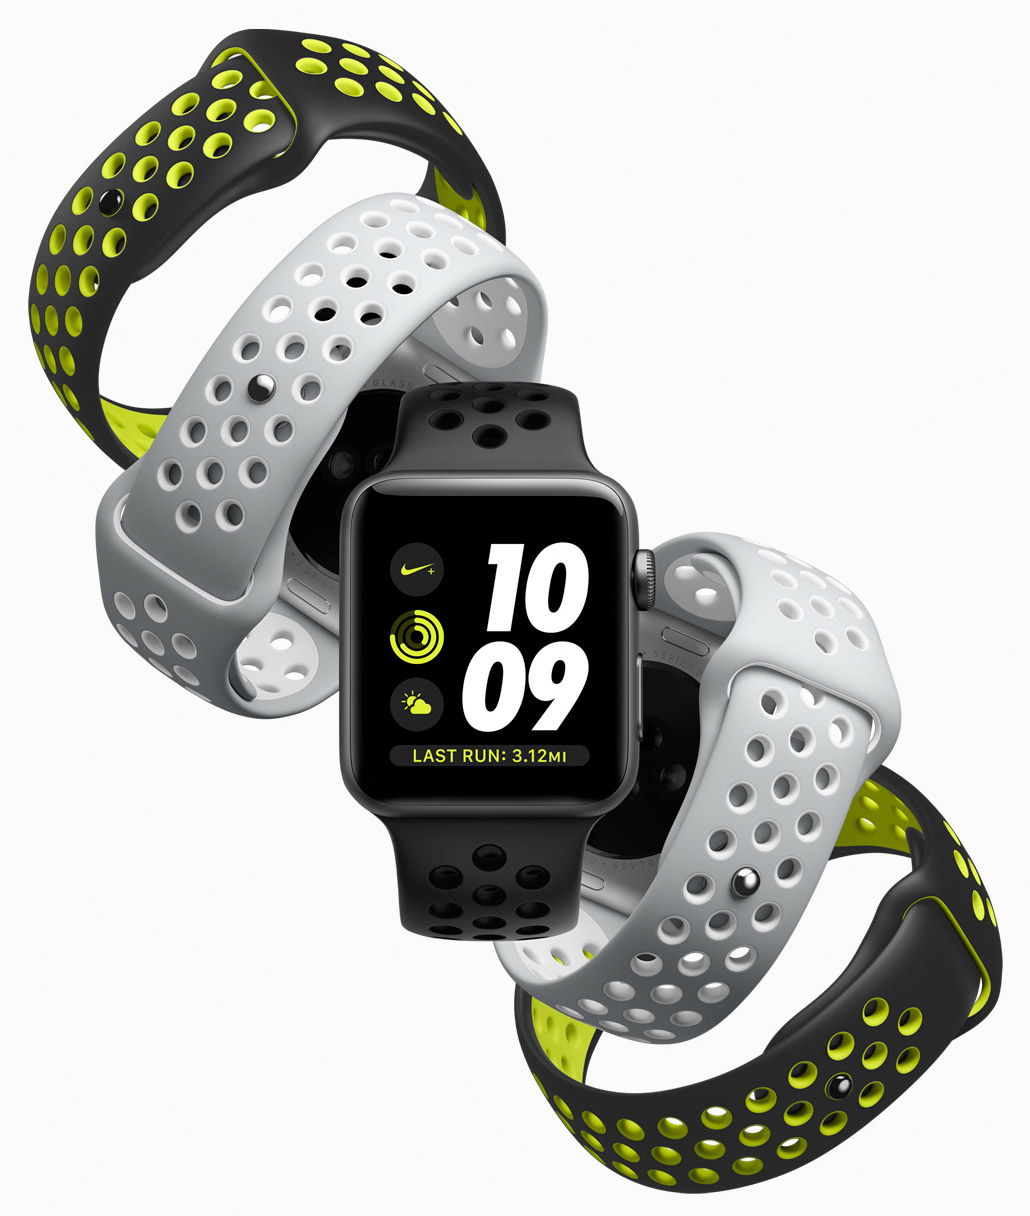 Nuevas correas para el Apple Watch (Primavera del 2017)